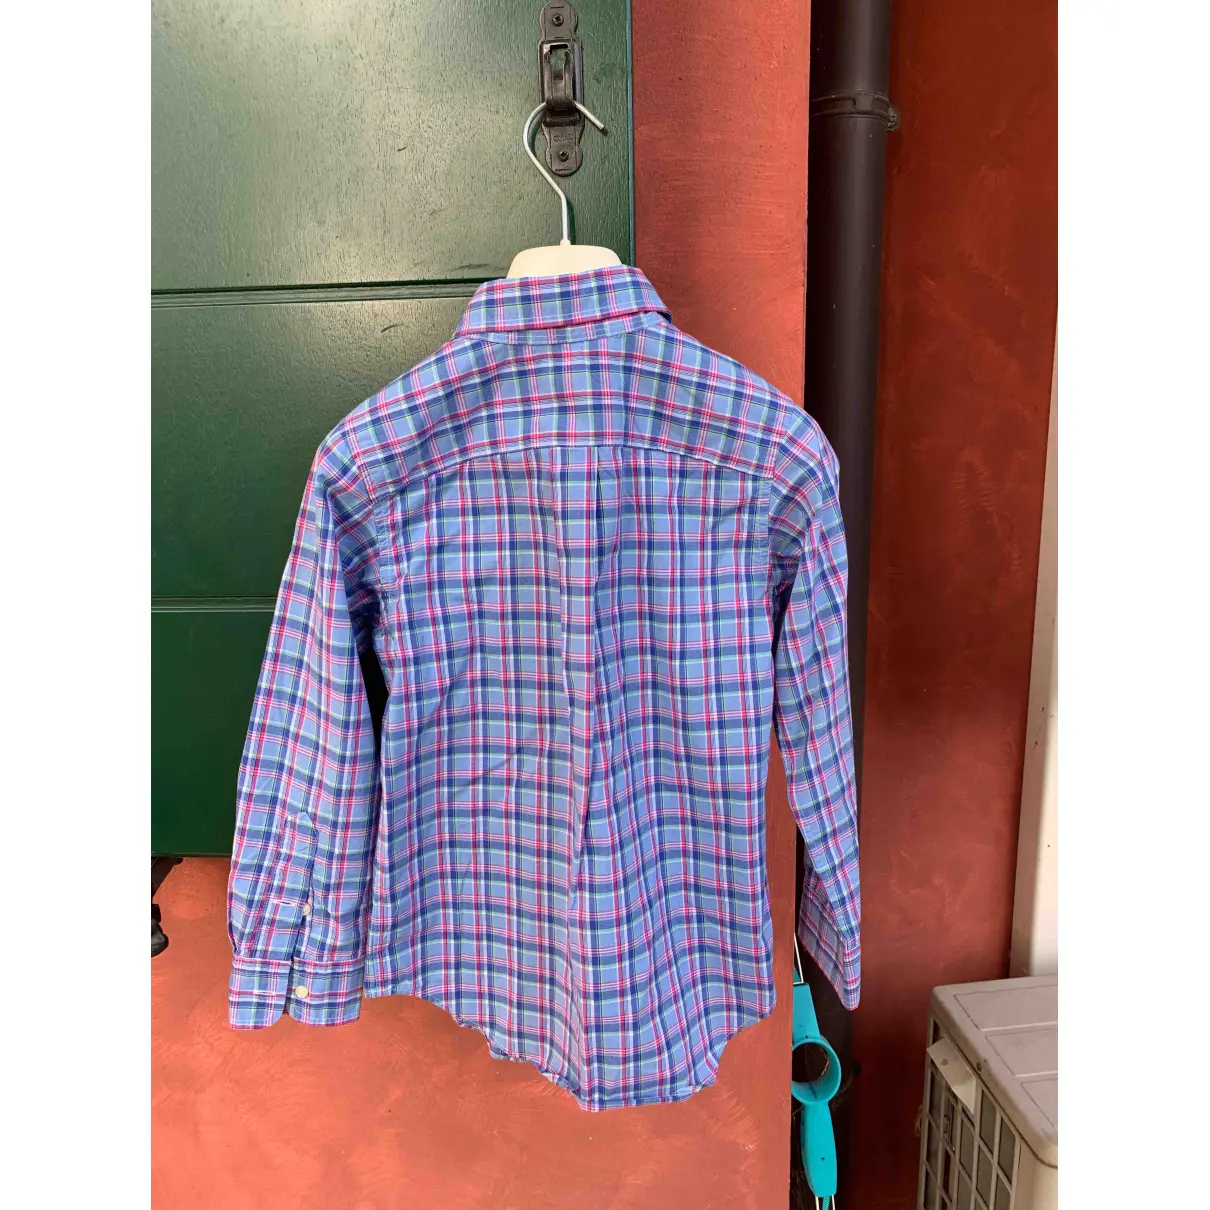 Buy Polo Ralph Lauren Shirt online